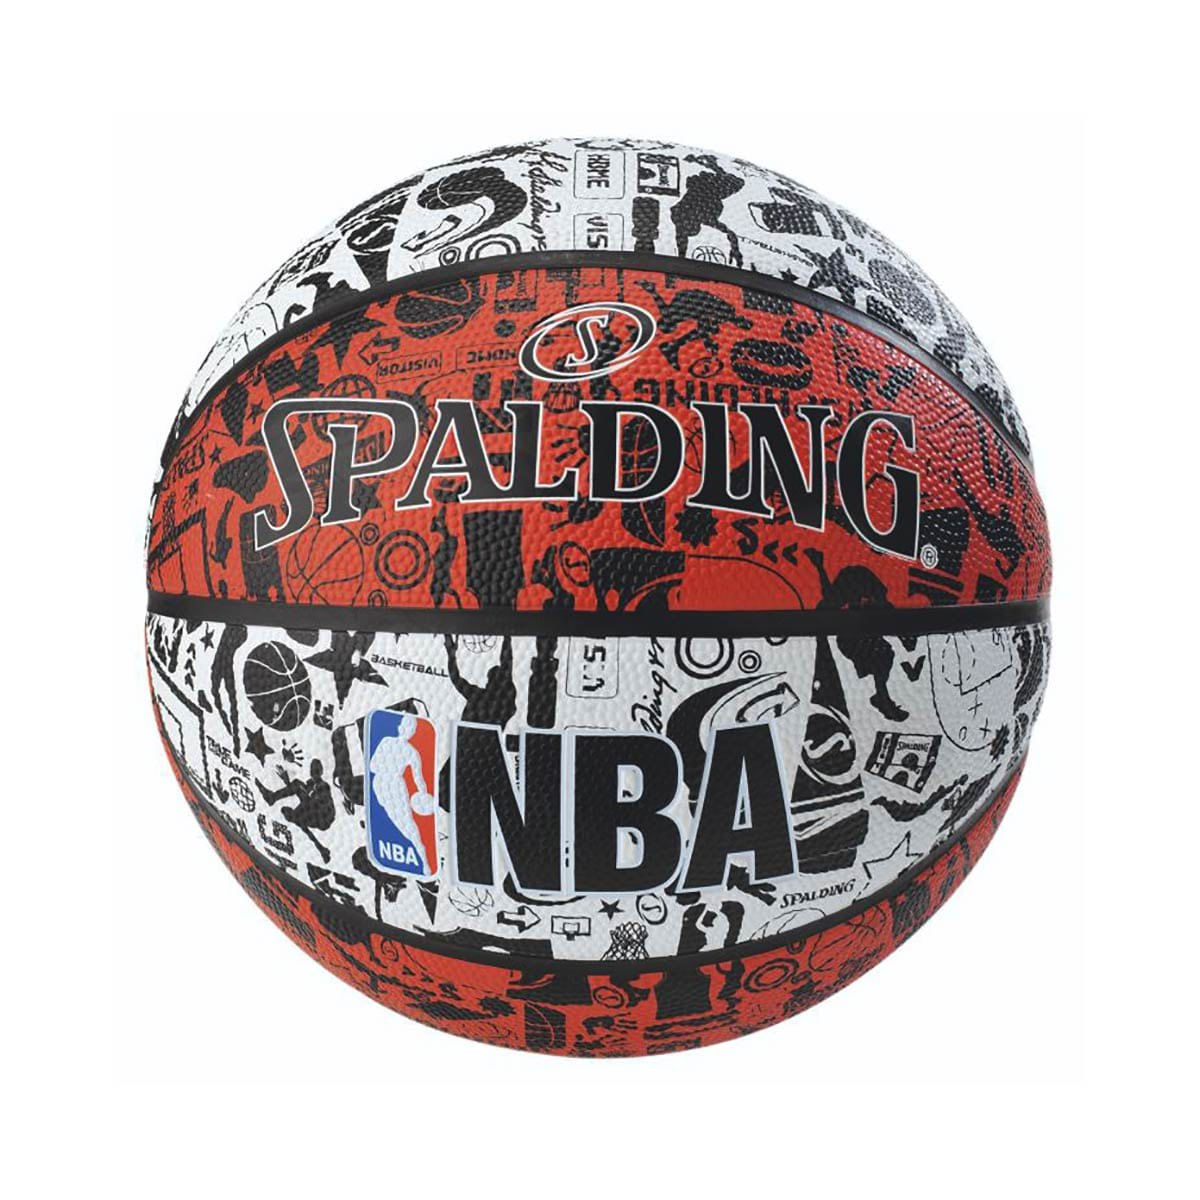 Spalding Bola oficial da NBA